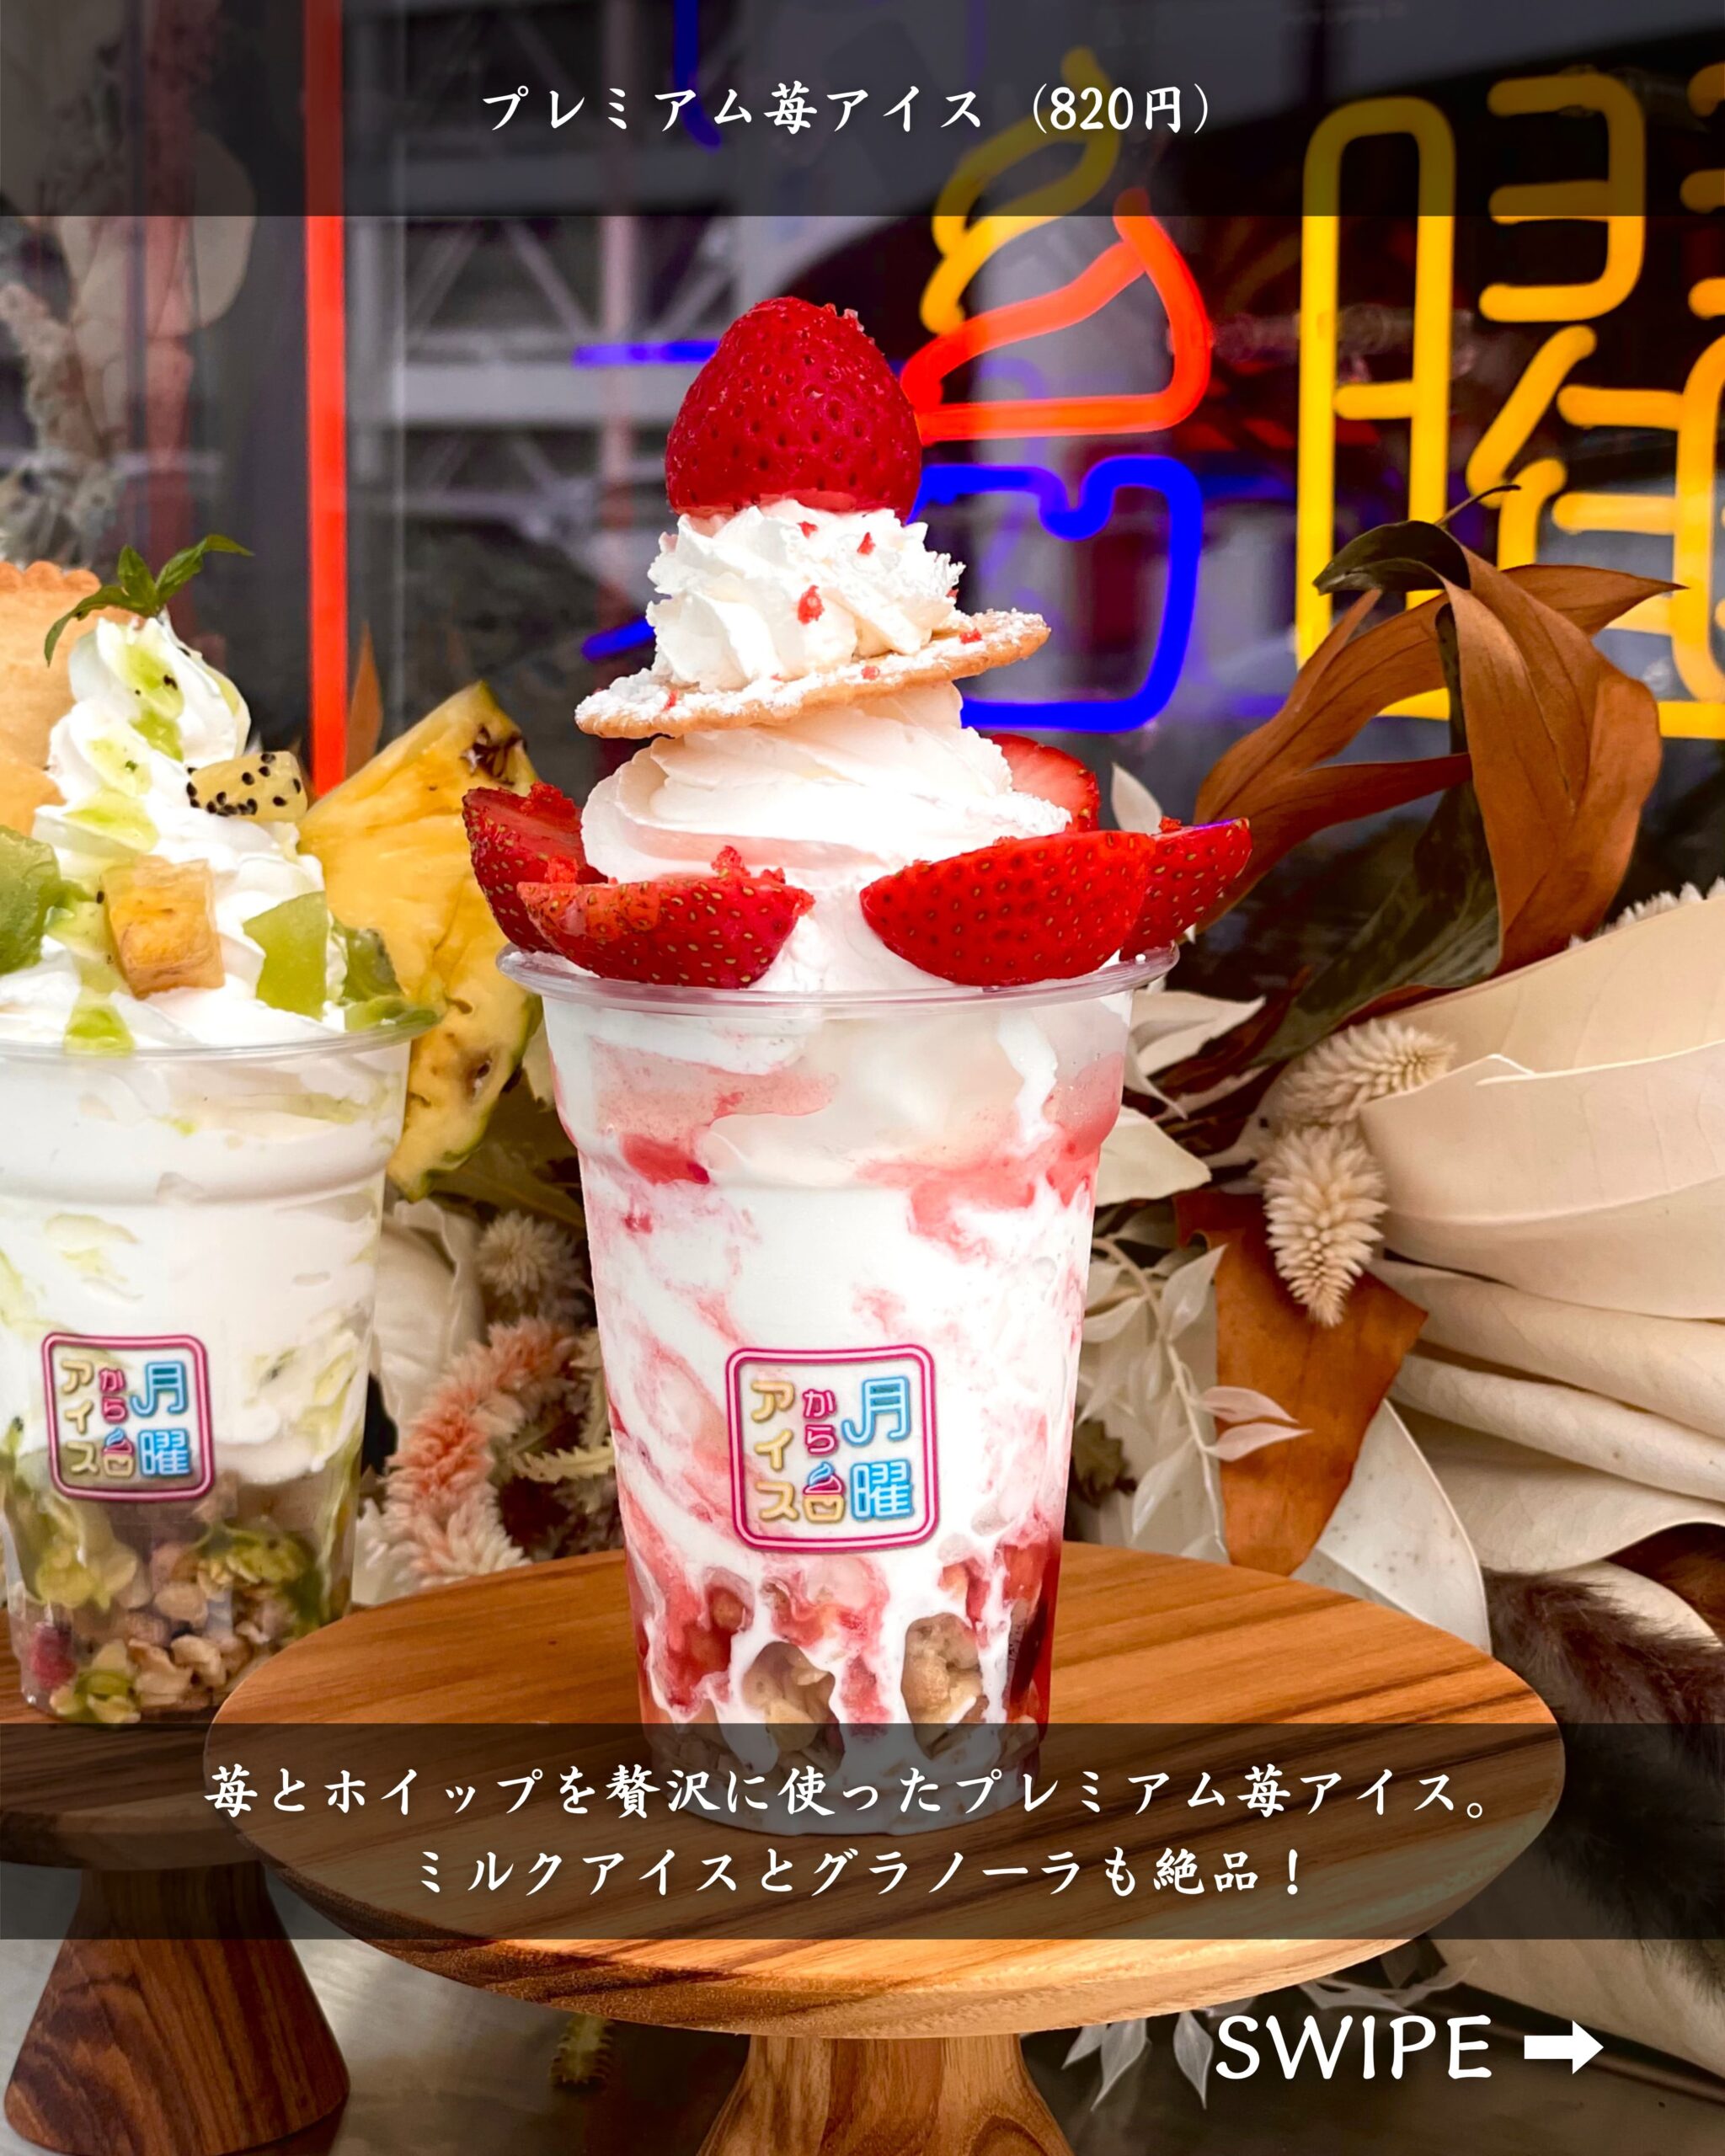 青森県弘前市にある「夜アイス専門店月曜からアイス」の「プレミアム苺アイス」